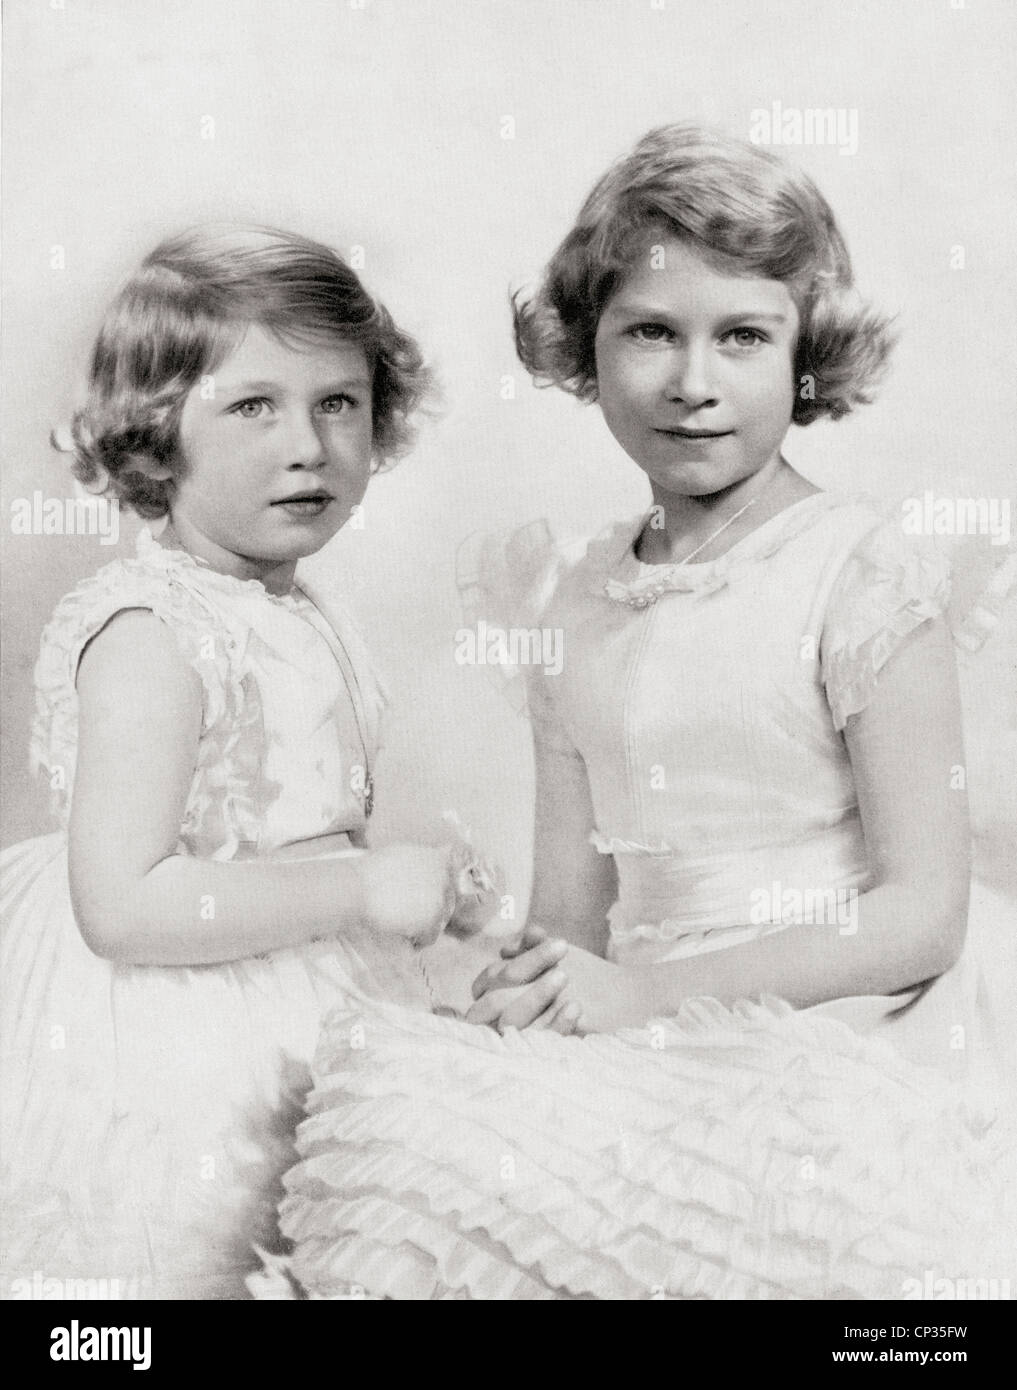 Königin Elisabeth II., rechts, als Prinzessin um 1937 und Prinzessin Margaret, links. Stockfoto